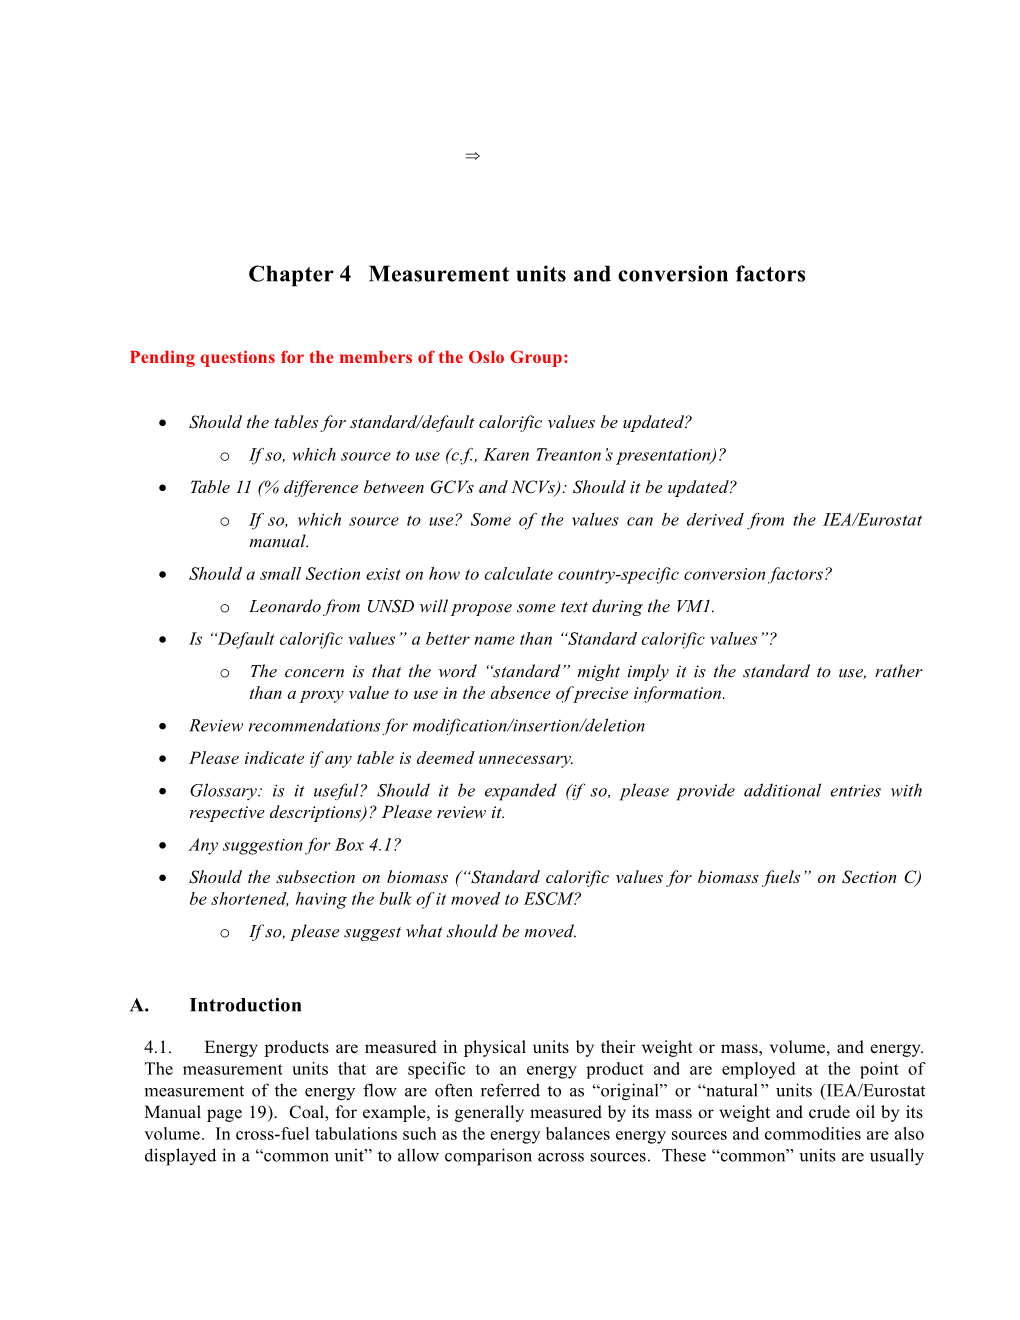 Chapter 4Measurement Units and Conversion Factors